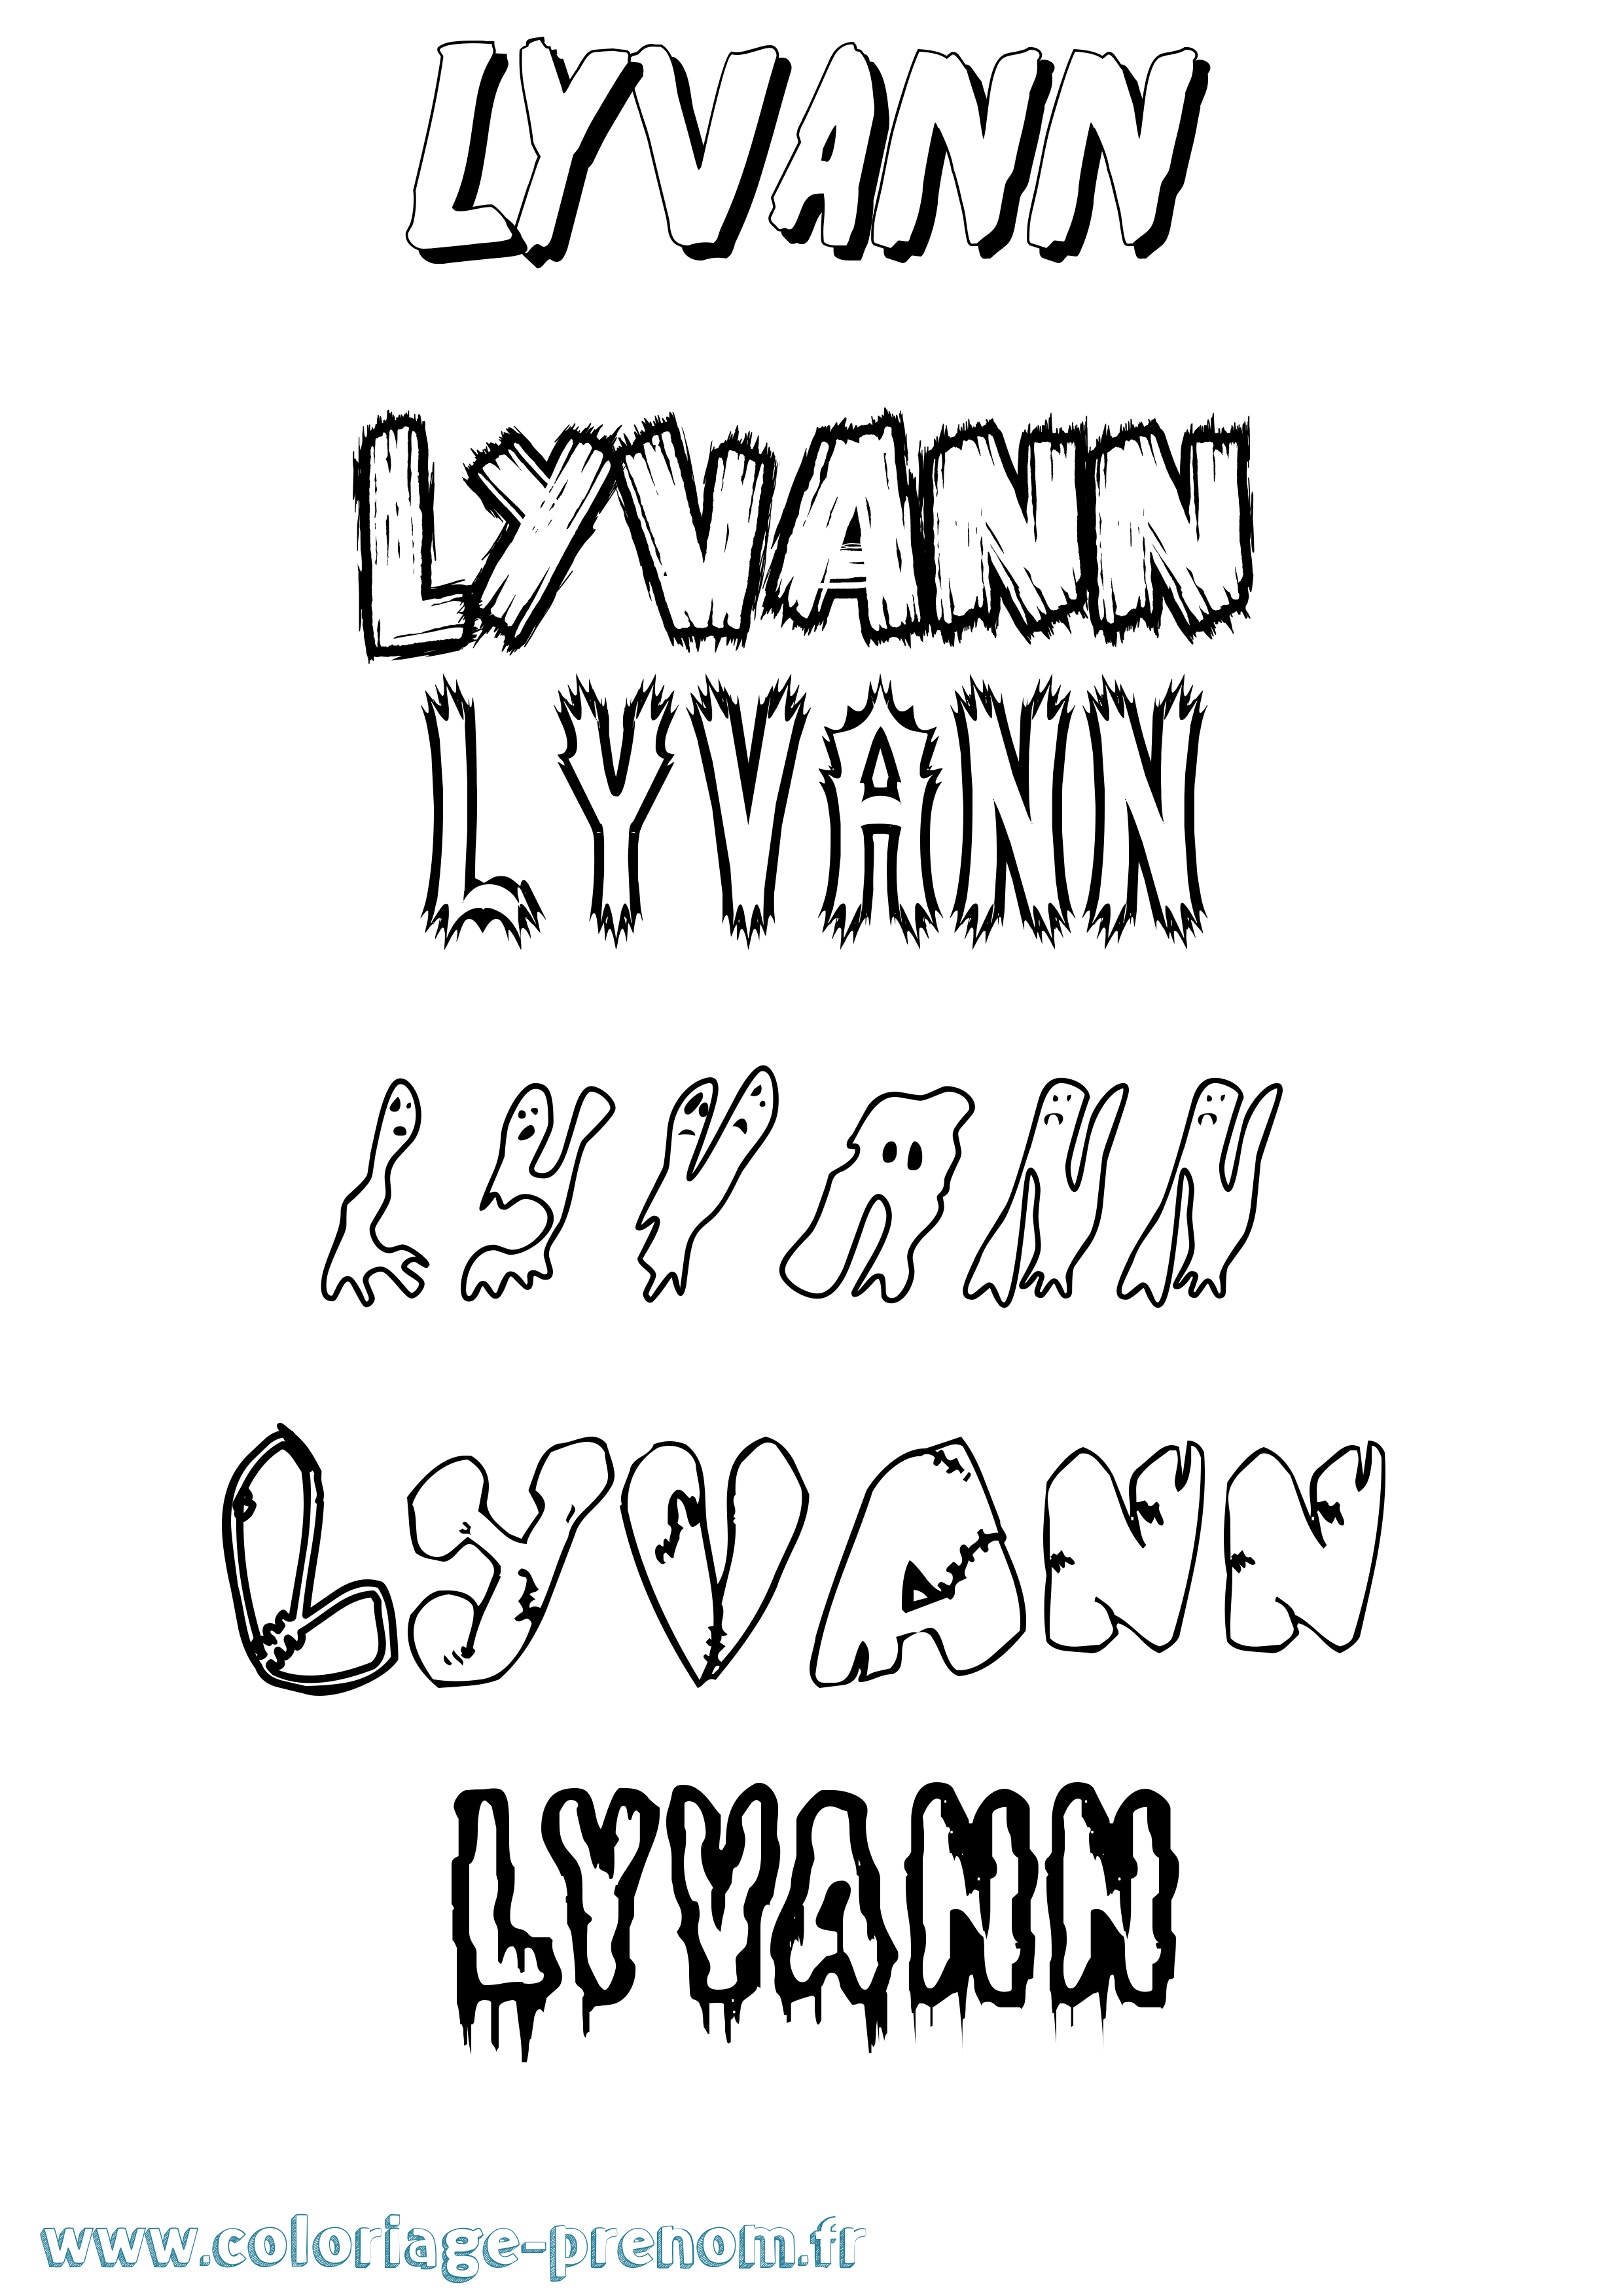 Coloriage prénom Lyvann Frisson